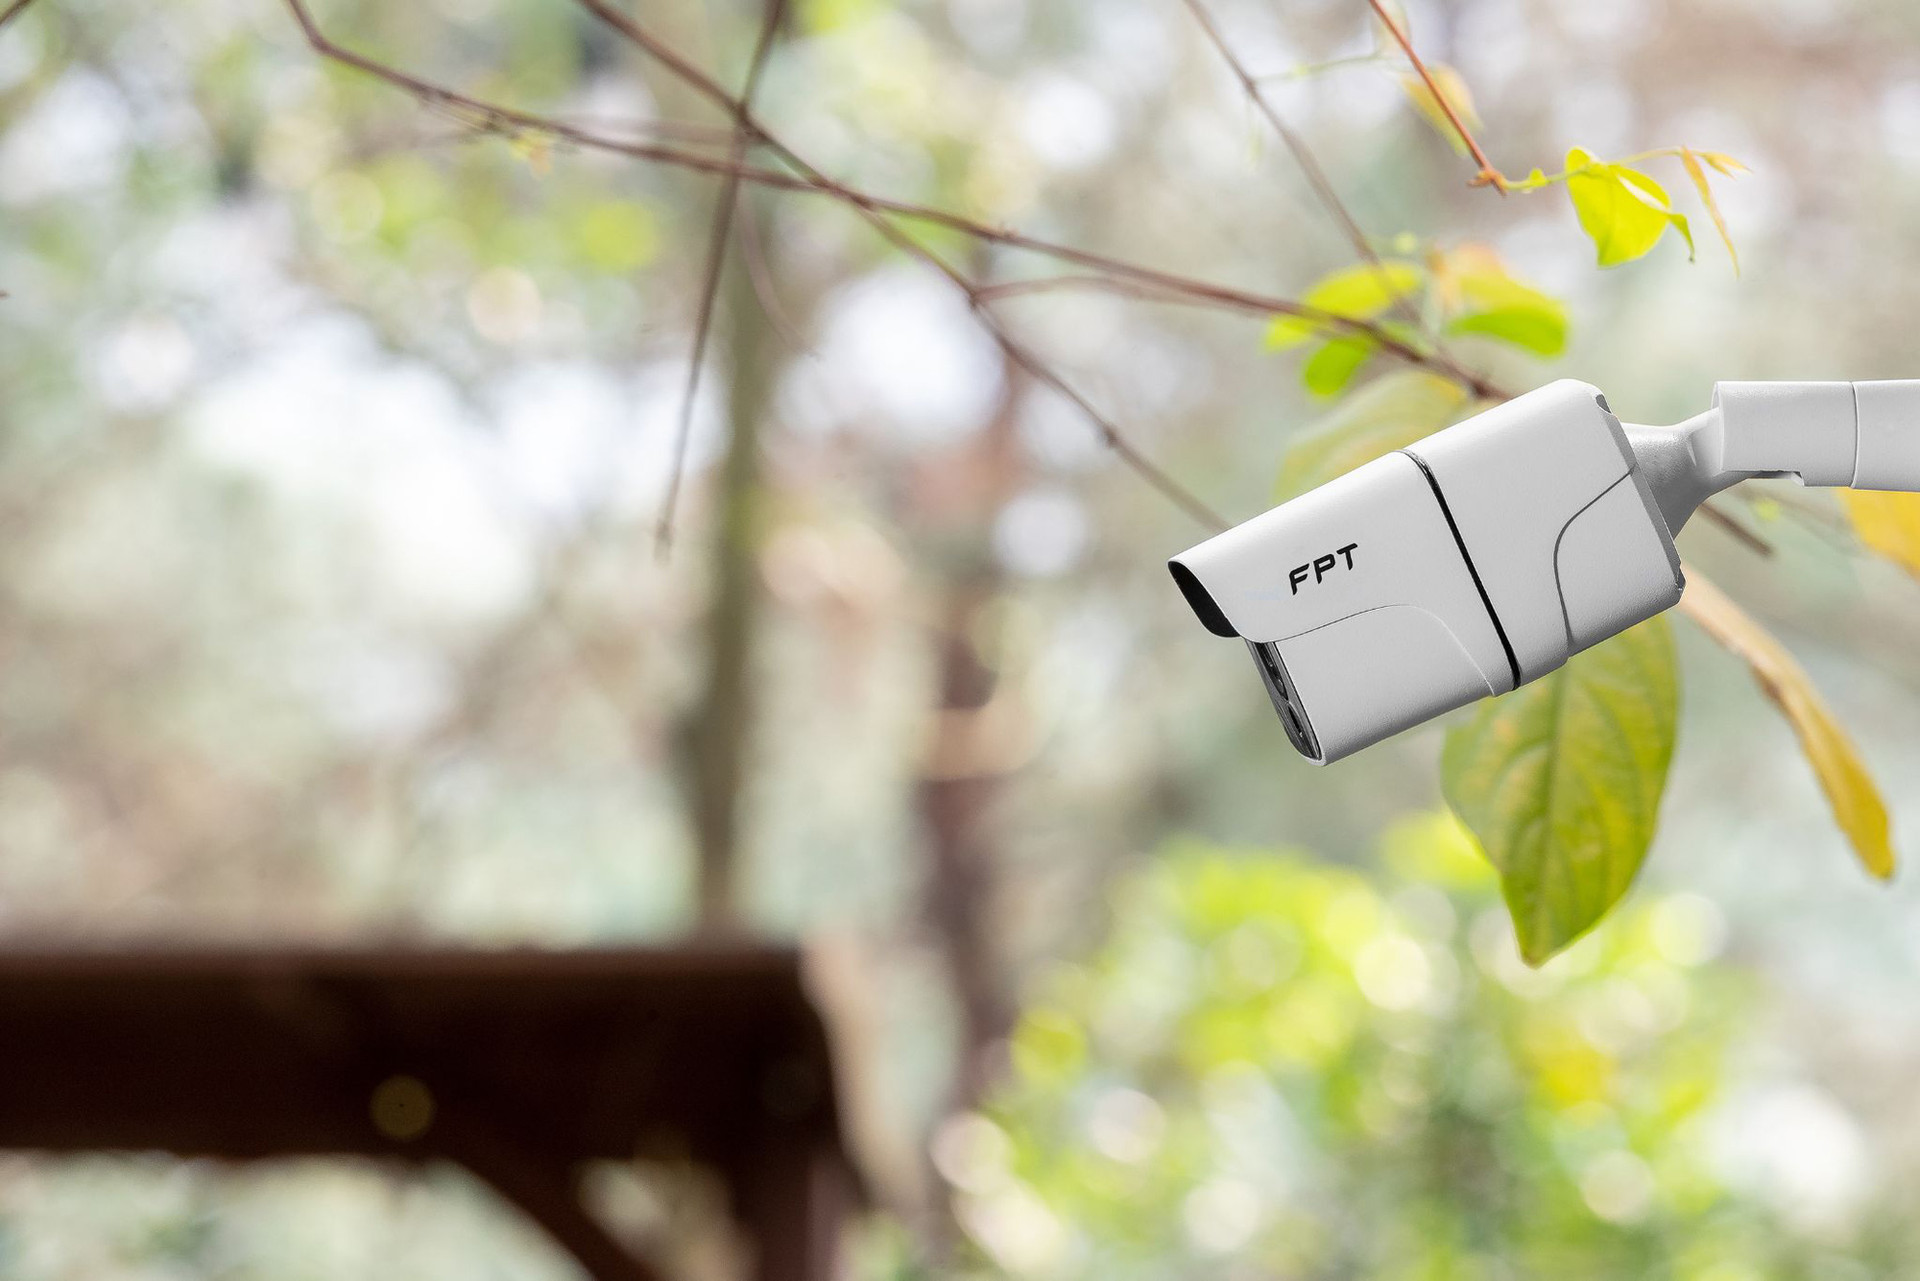 Ra mắt FPT Camera IQ có khả năng nhận diện thông minh nhờ sử dụng trí tuệ nhân tạo - Ảnh 3.